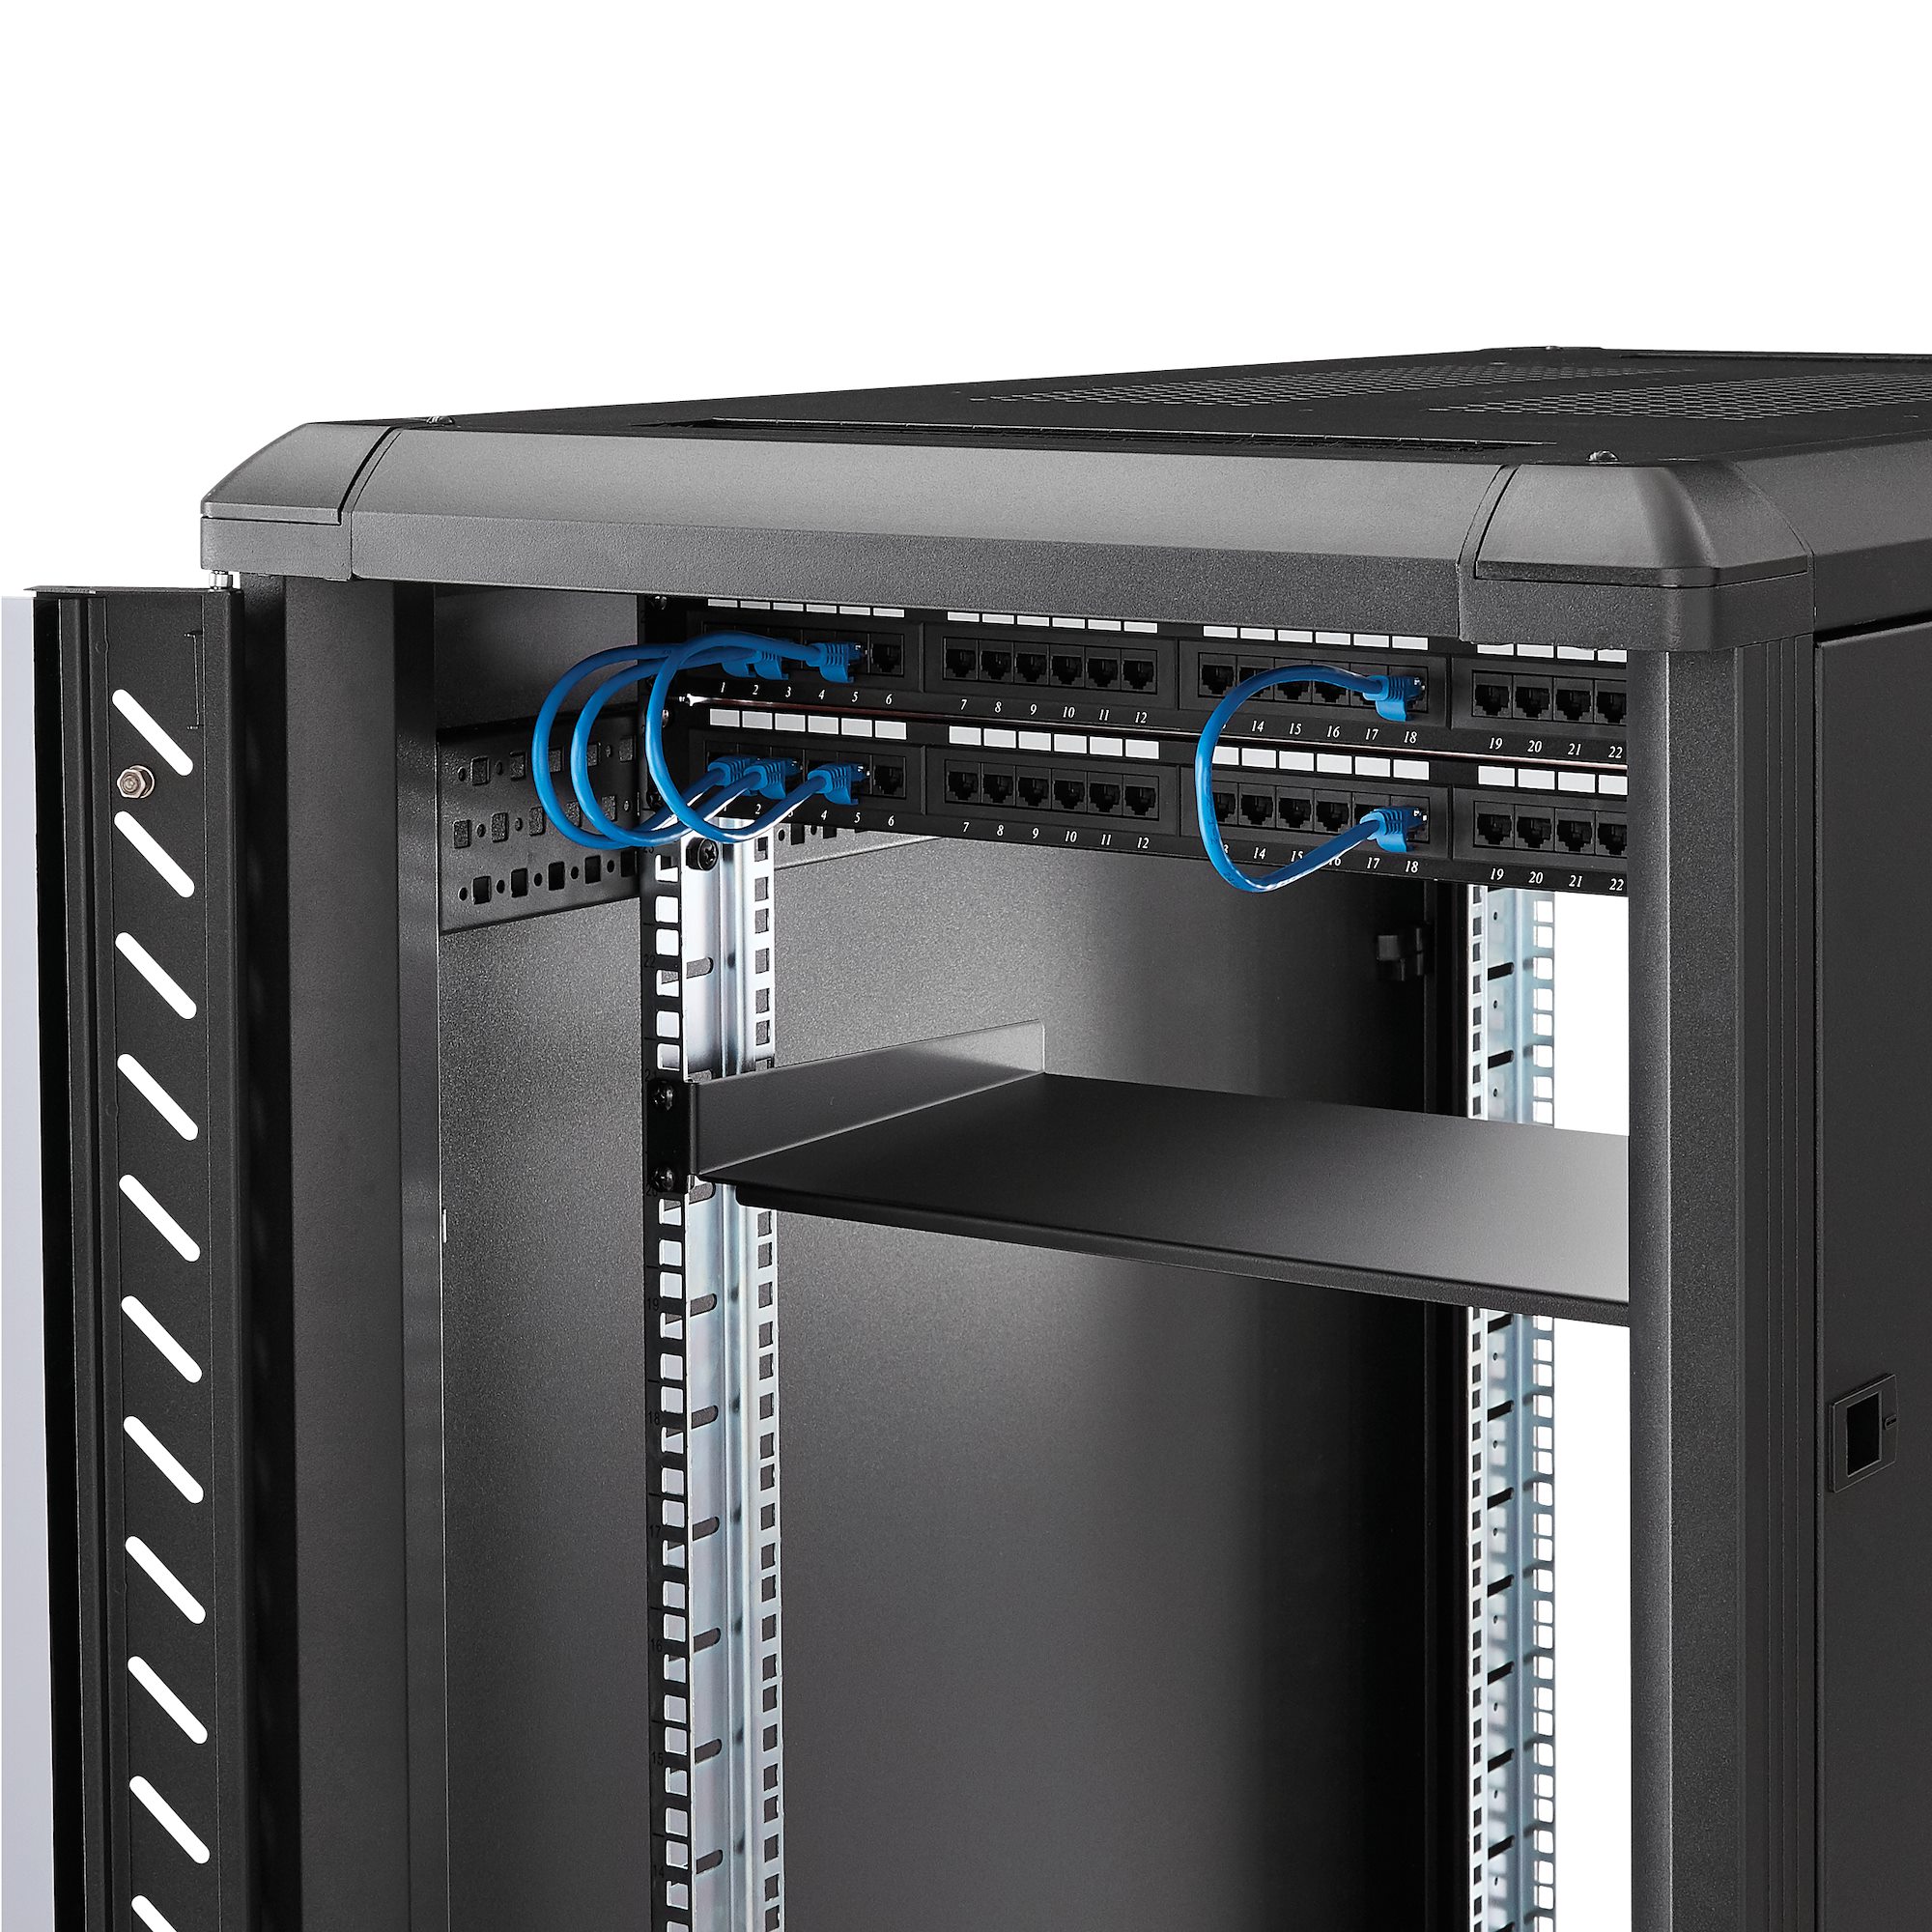 Component Shelf 1U Network Server Rack & Enclosure 2887 10” Depth 